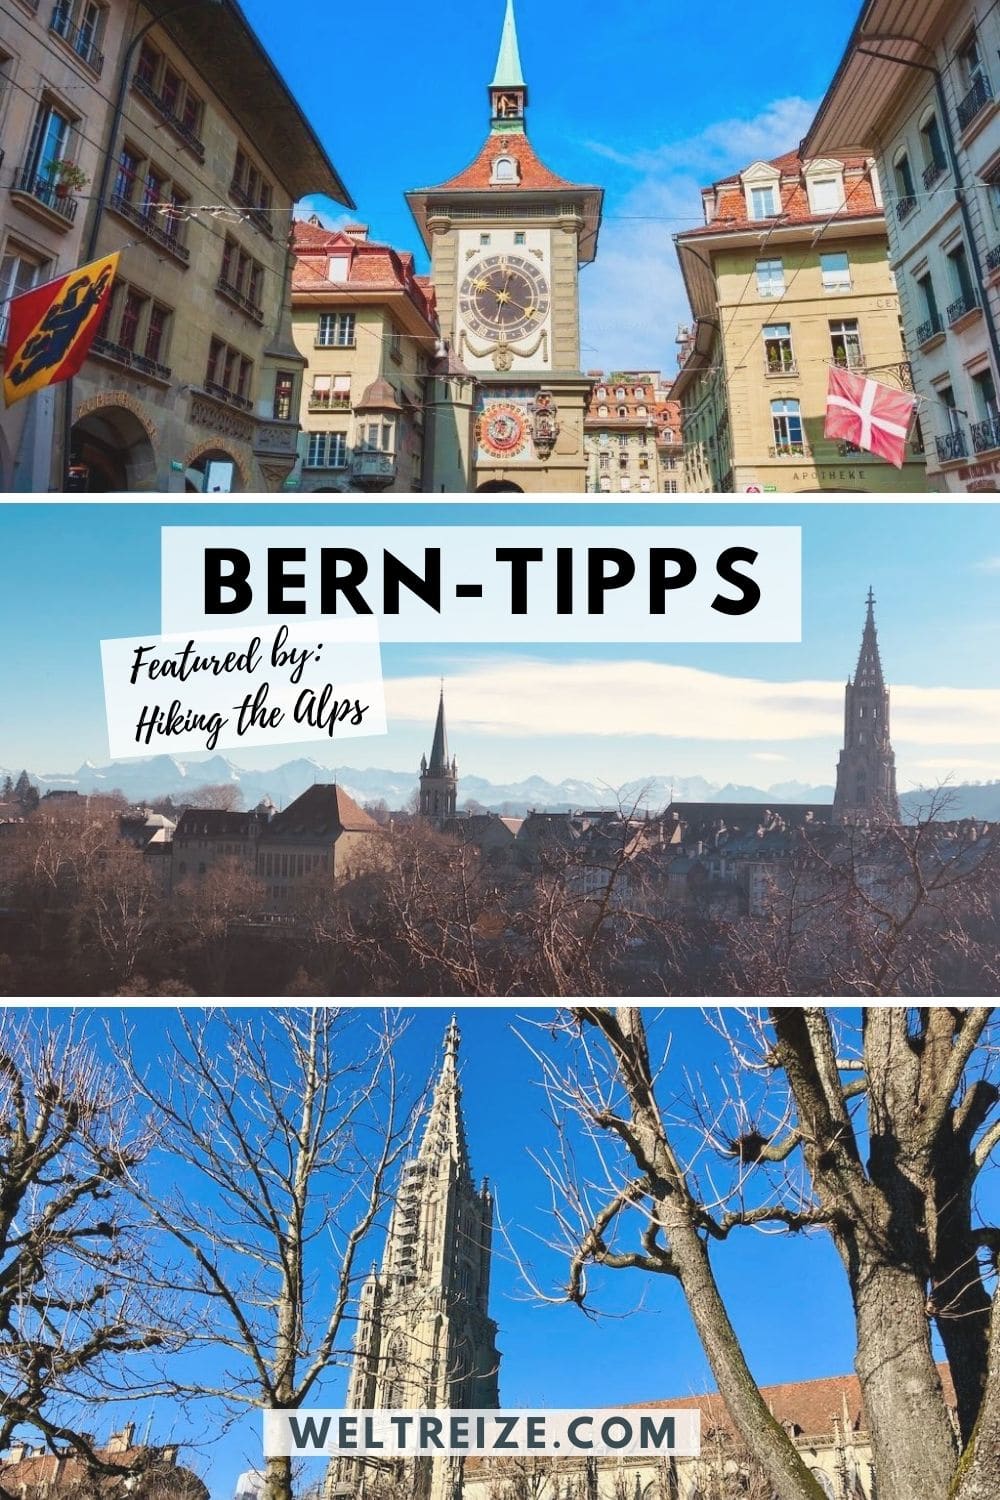 Bern-Tipps weiterempfehlen